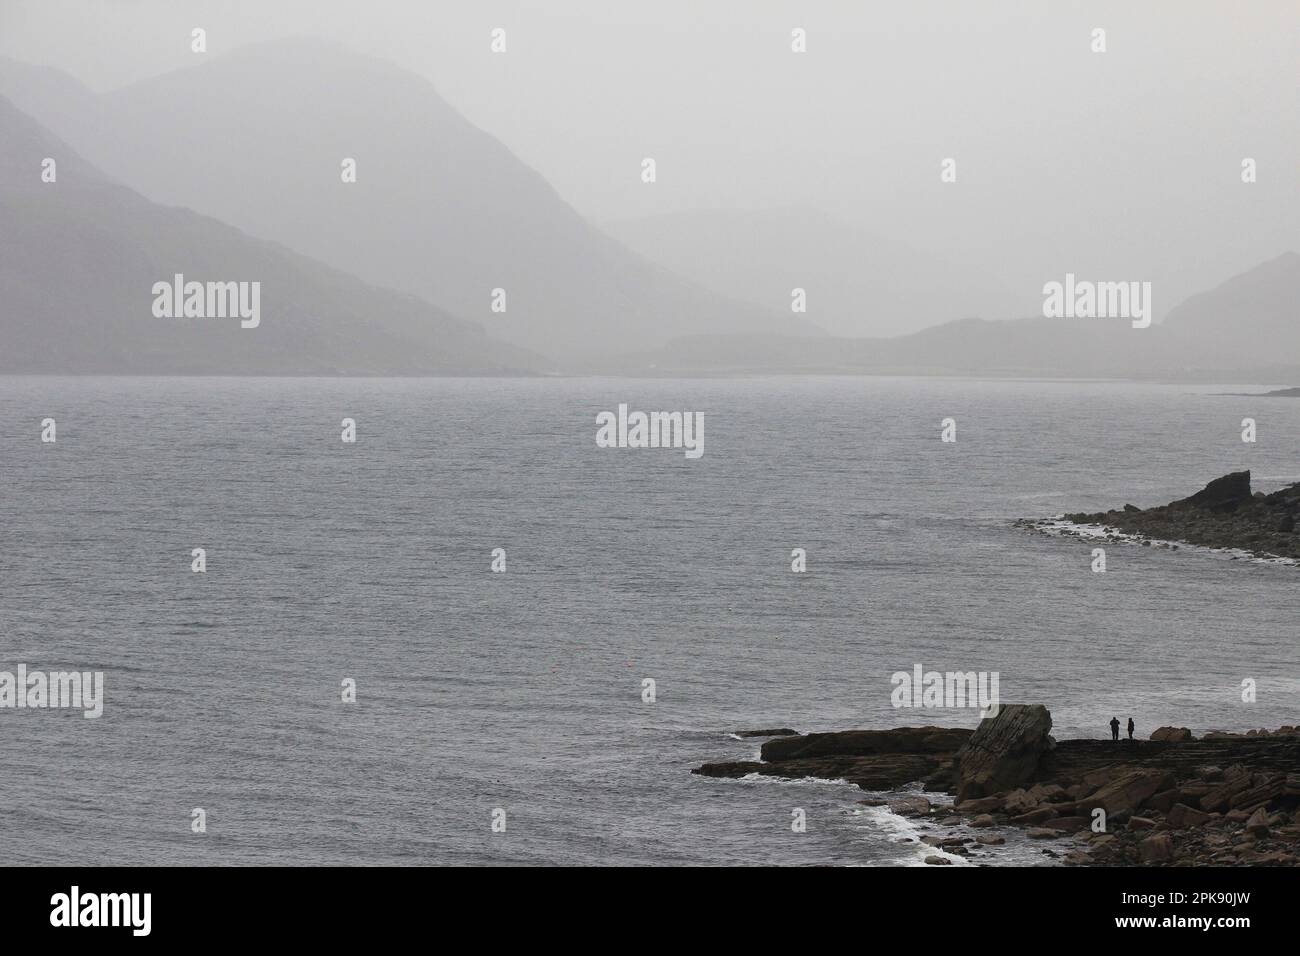 La fin du monde sur l'île de Skye à Elgol - Écosse Banque D'Images